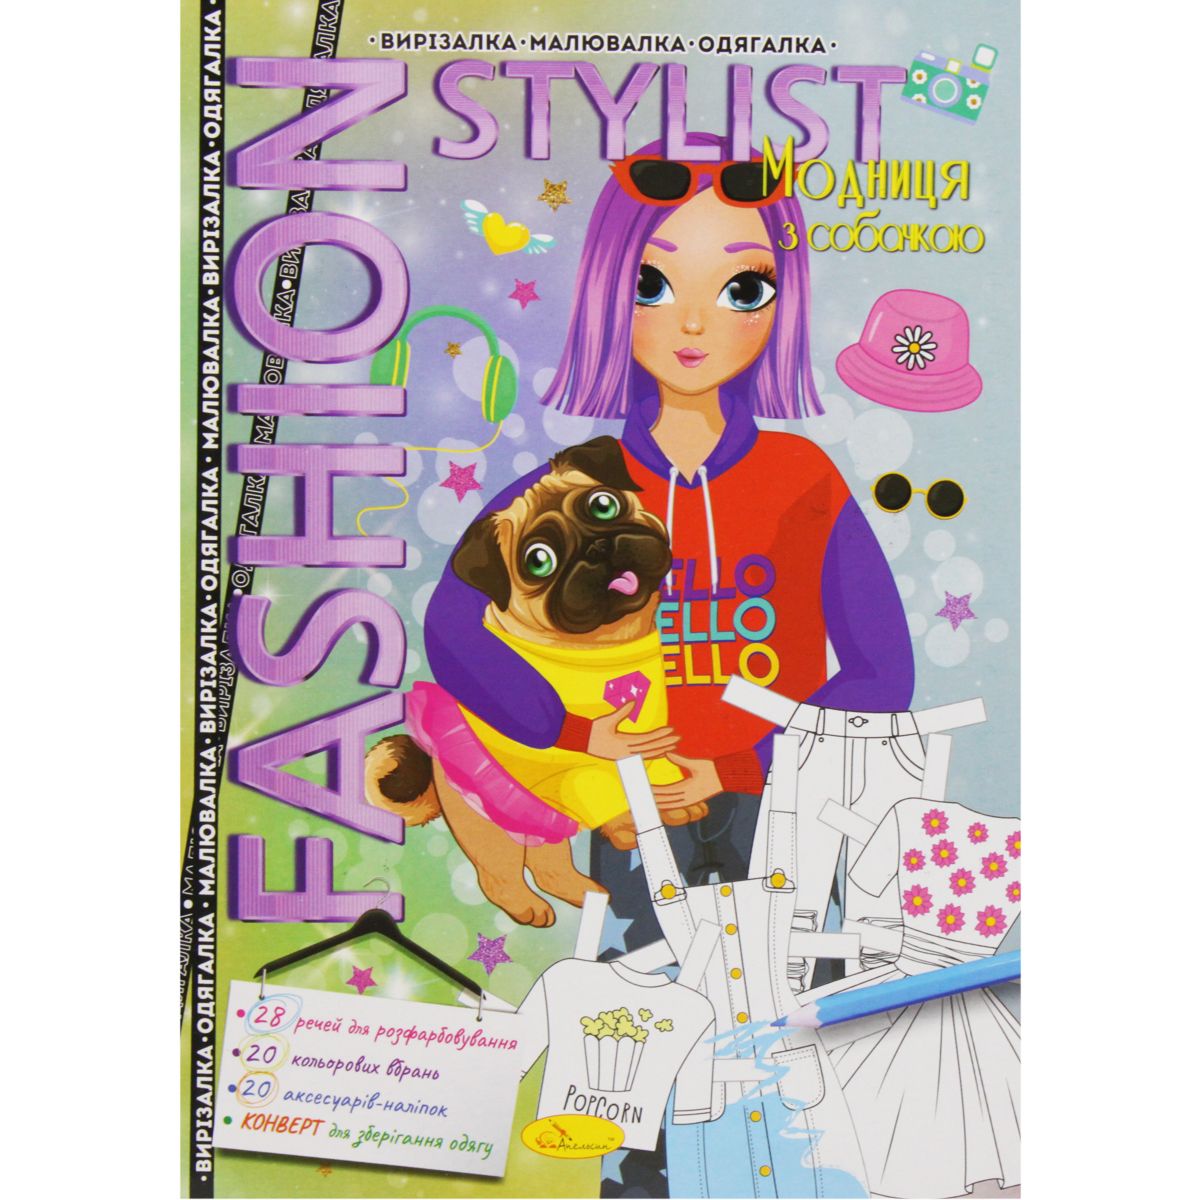 Книжка-одягалка "Fashion stylist: Модниця з собачкою" (укр)